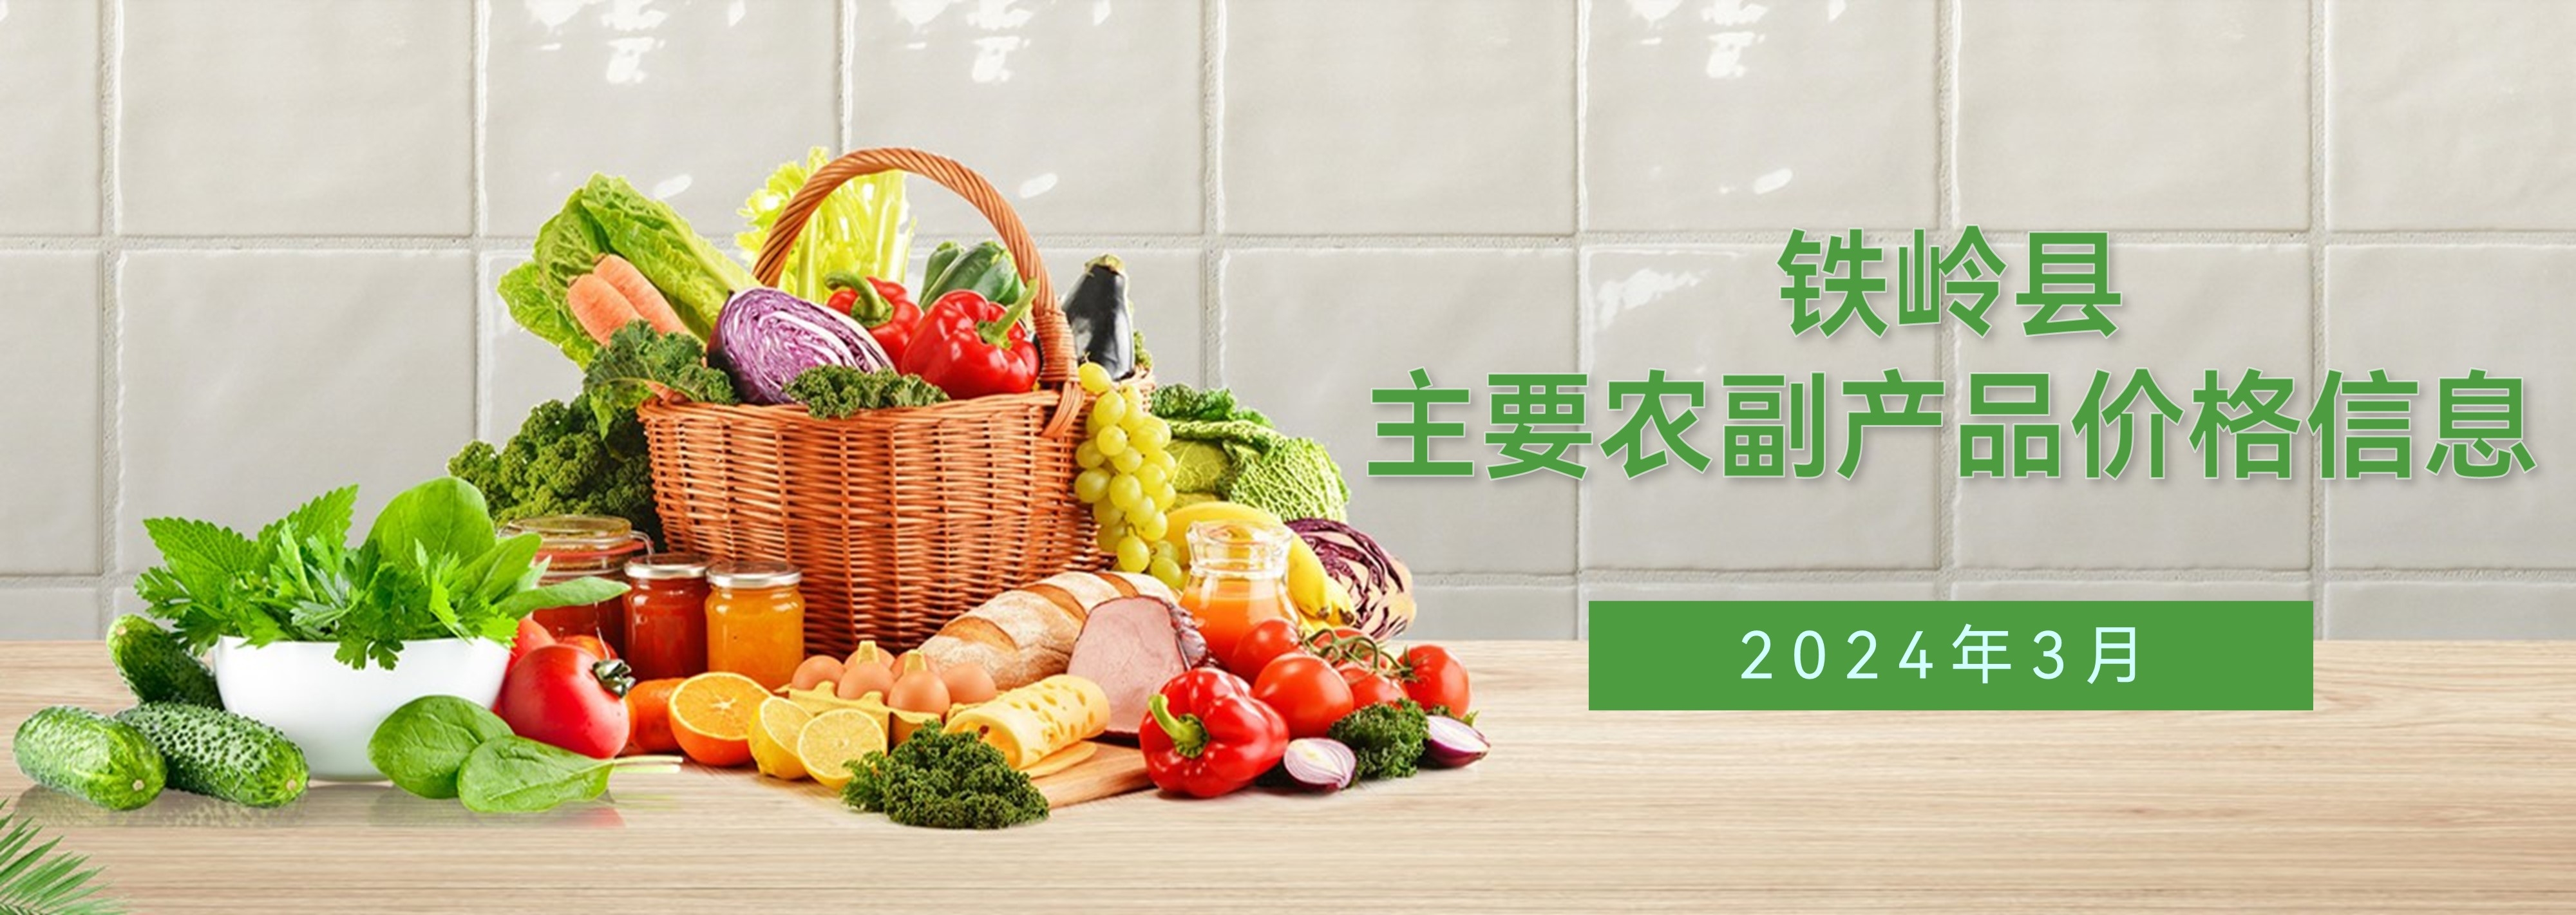 铁岭县2024年3月主要农副产品价格信息